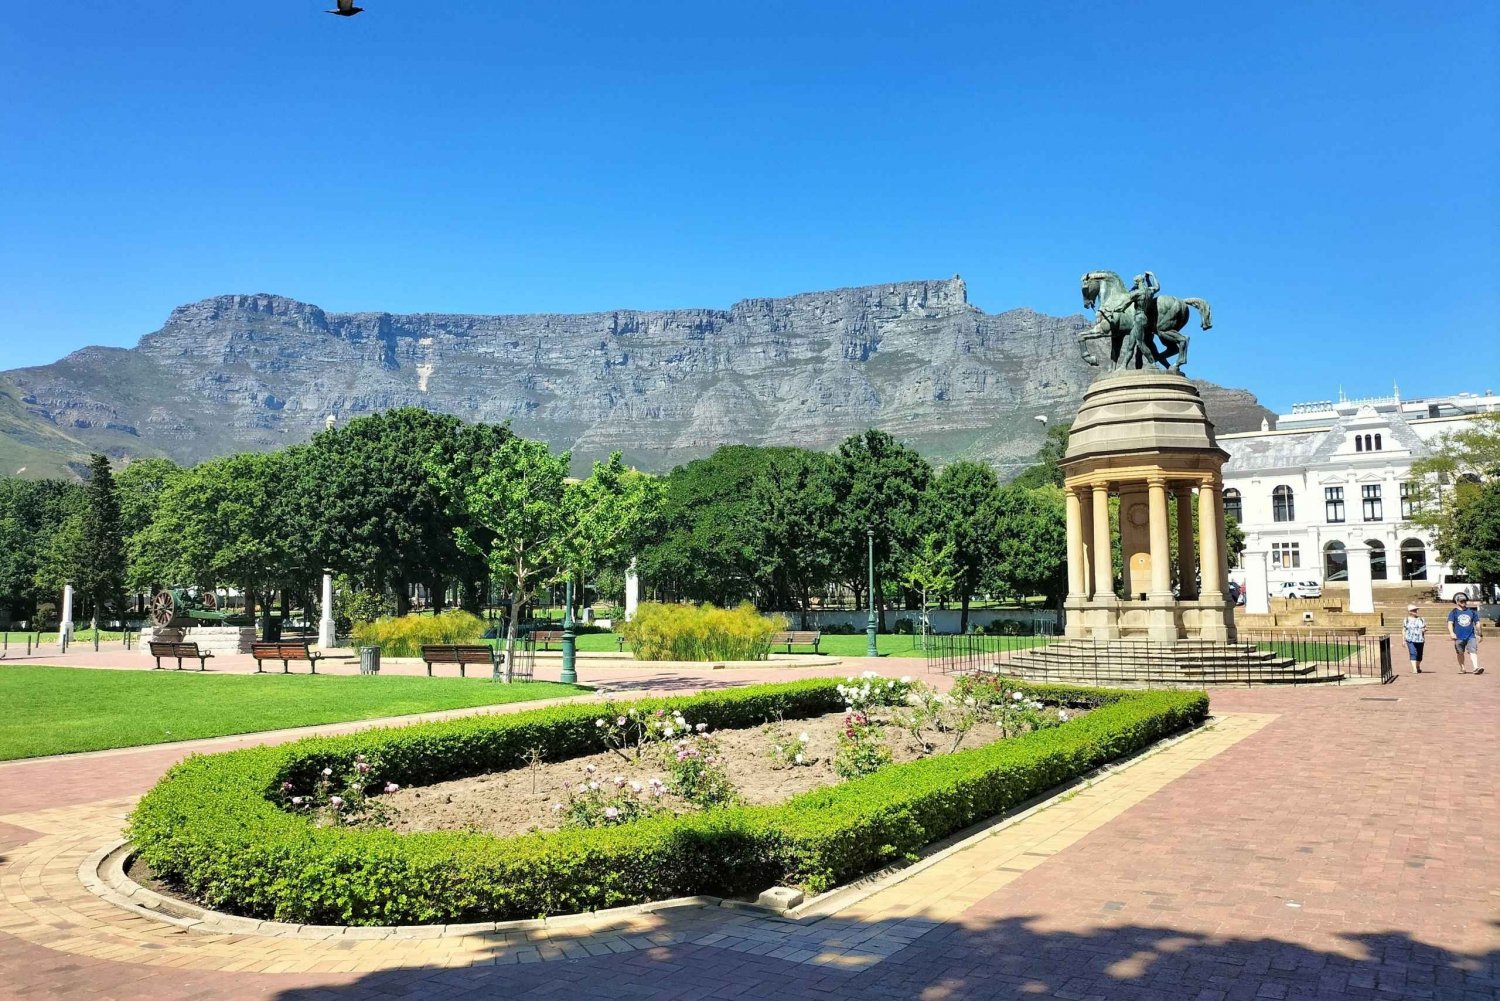 5-dages, privat pakke Det bedste af Cape Town